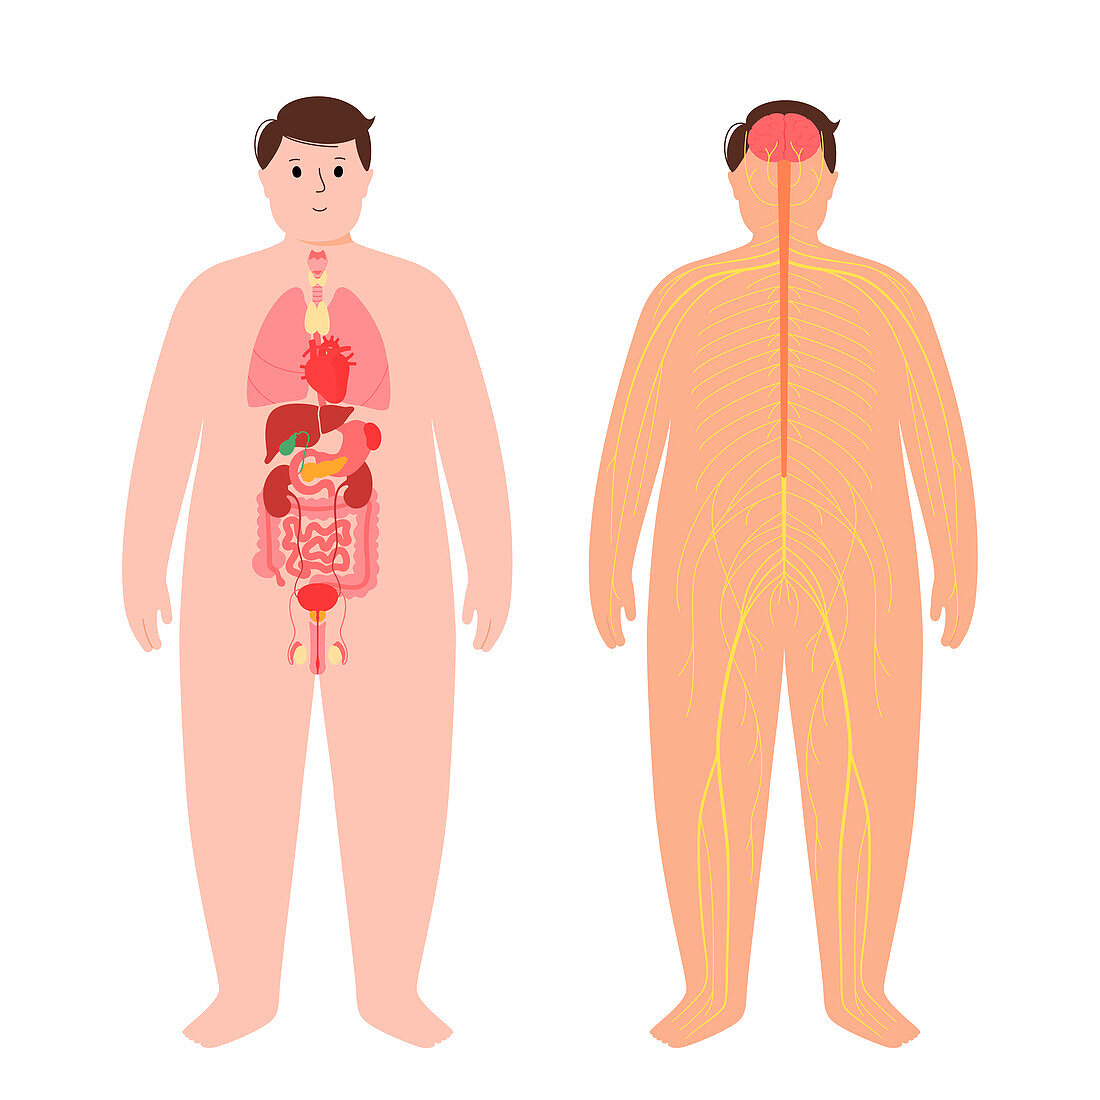 Organs and nervous system, illustration